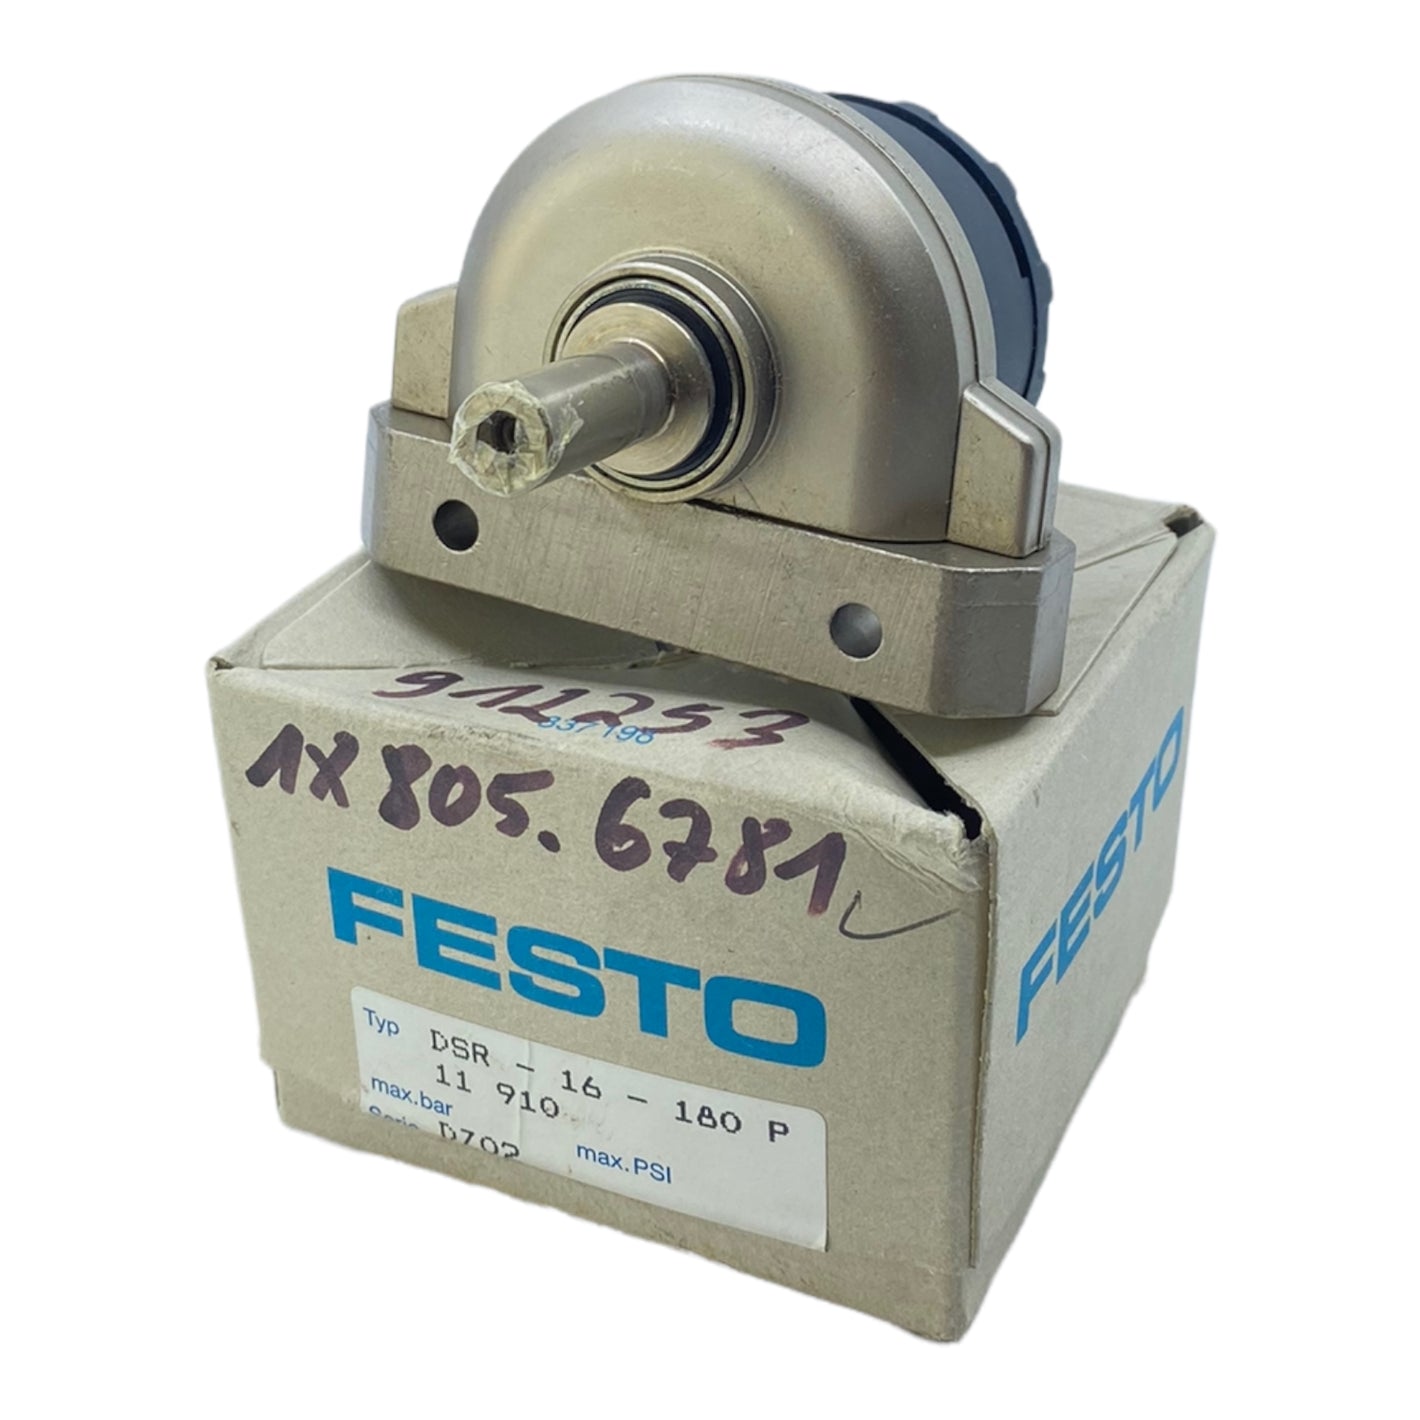 Festo DSR-16-180-P part-turn actuator 11910 